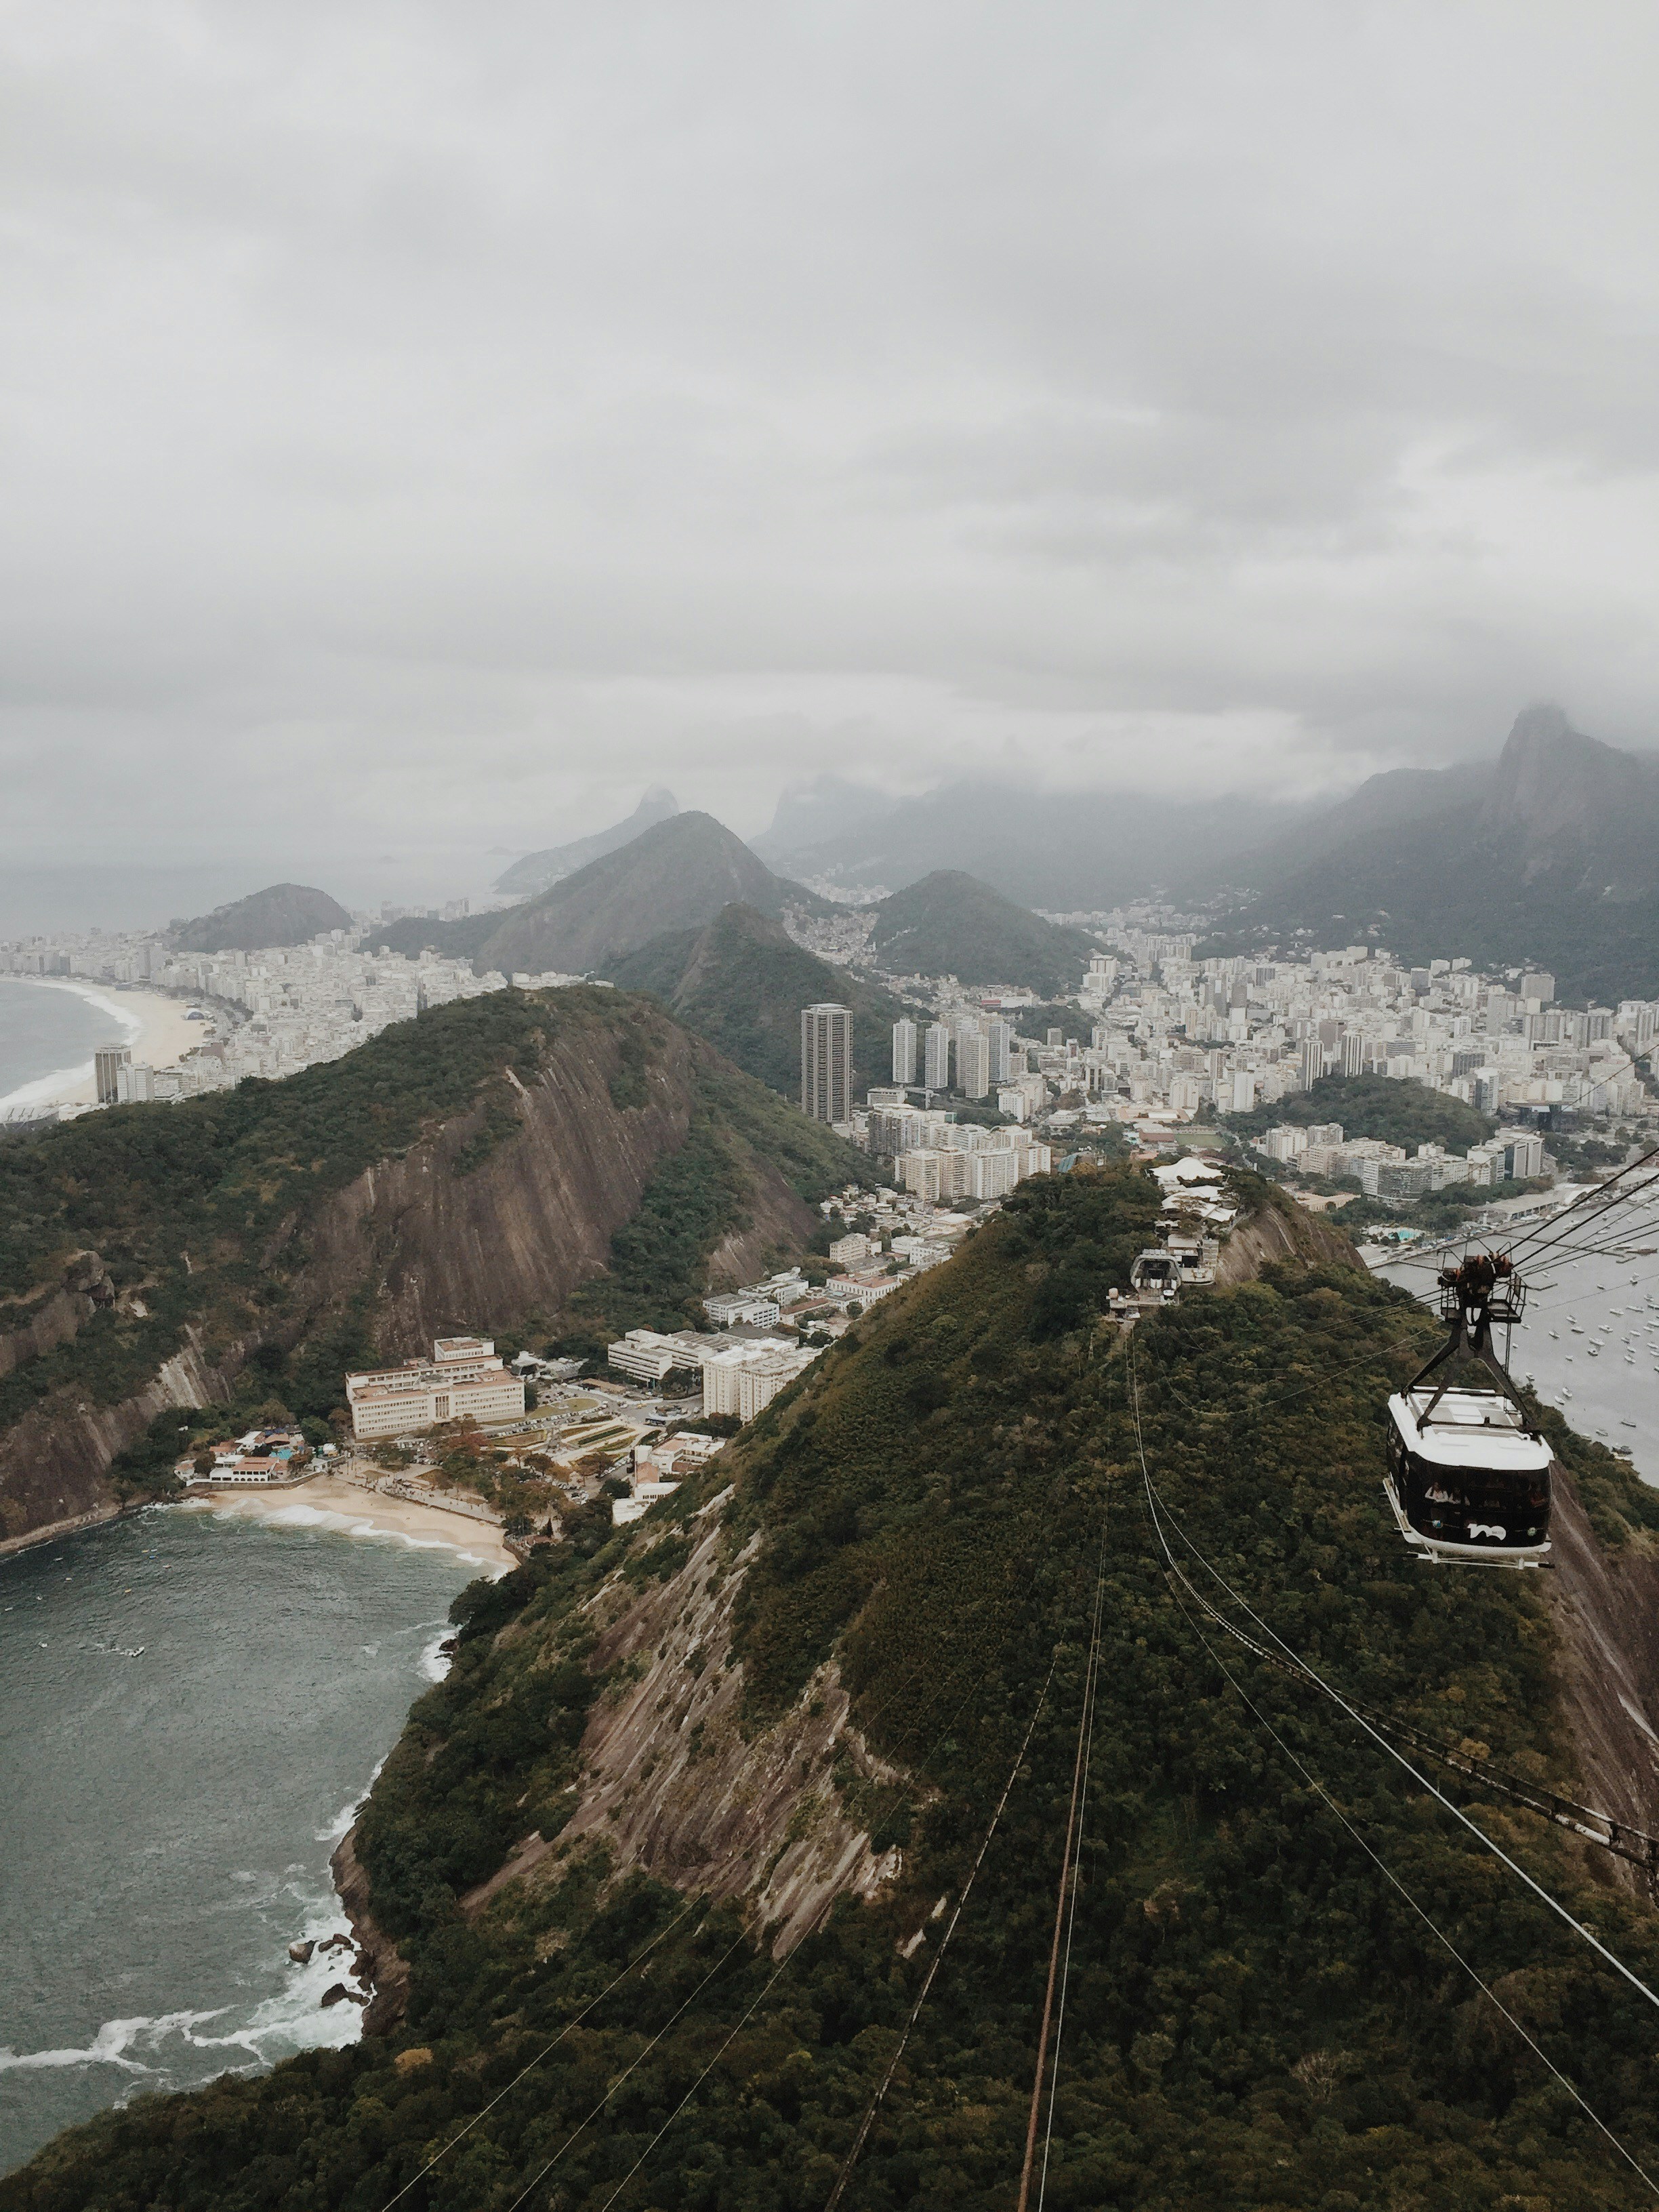 Incredible view from the “pan de azucar” mountain in Rio de Janeiro